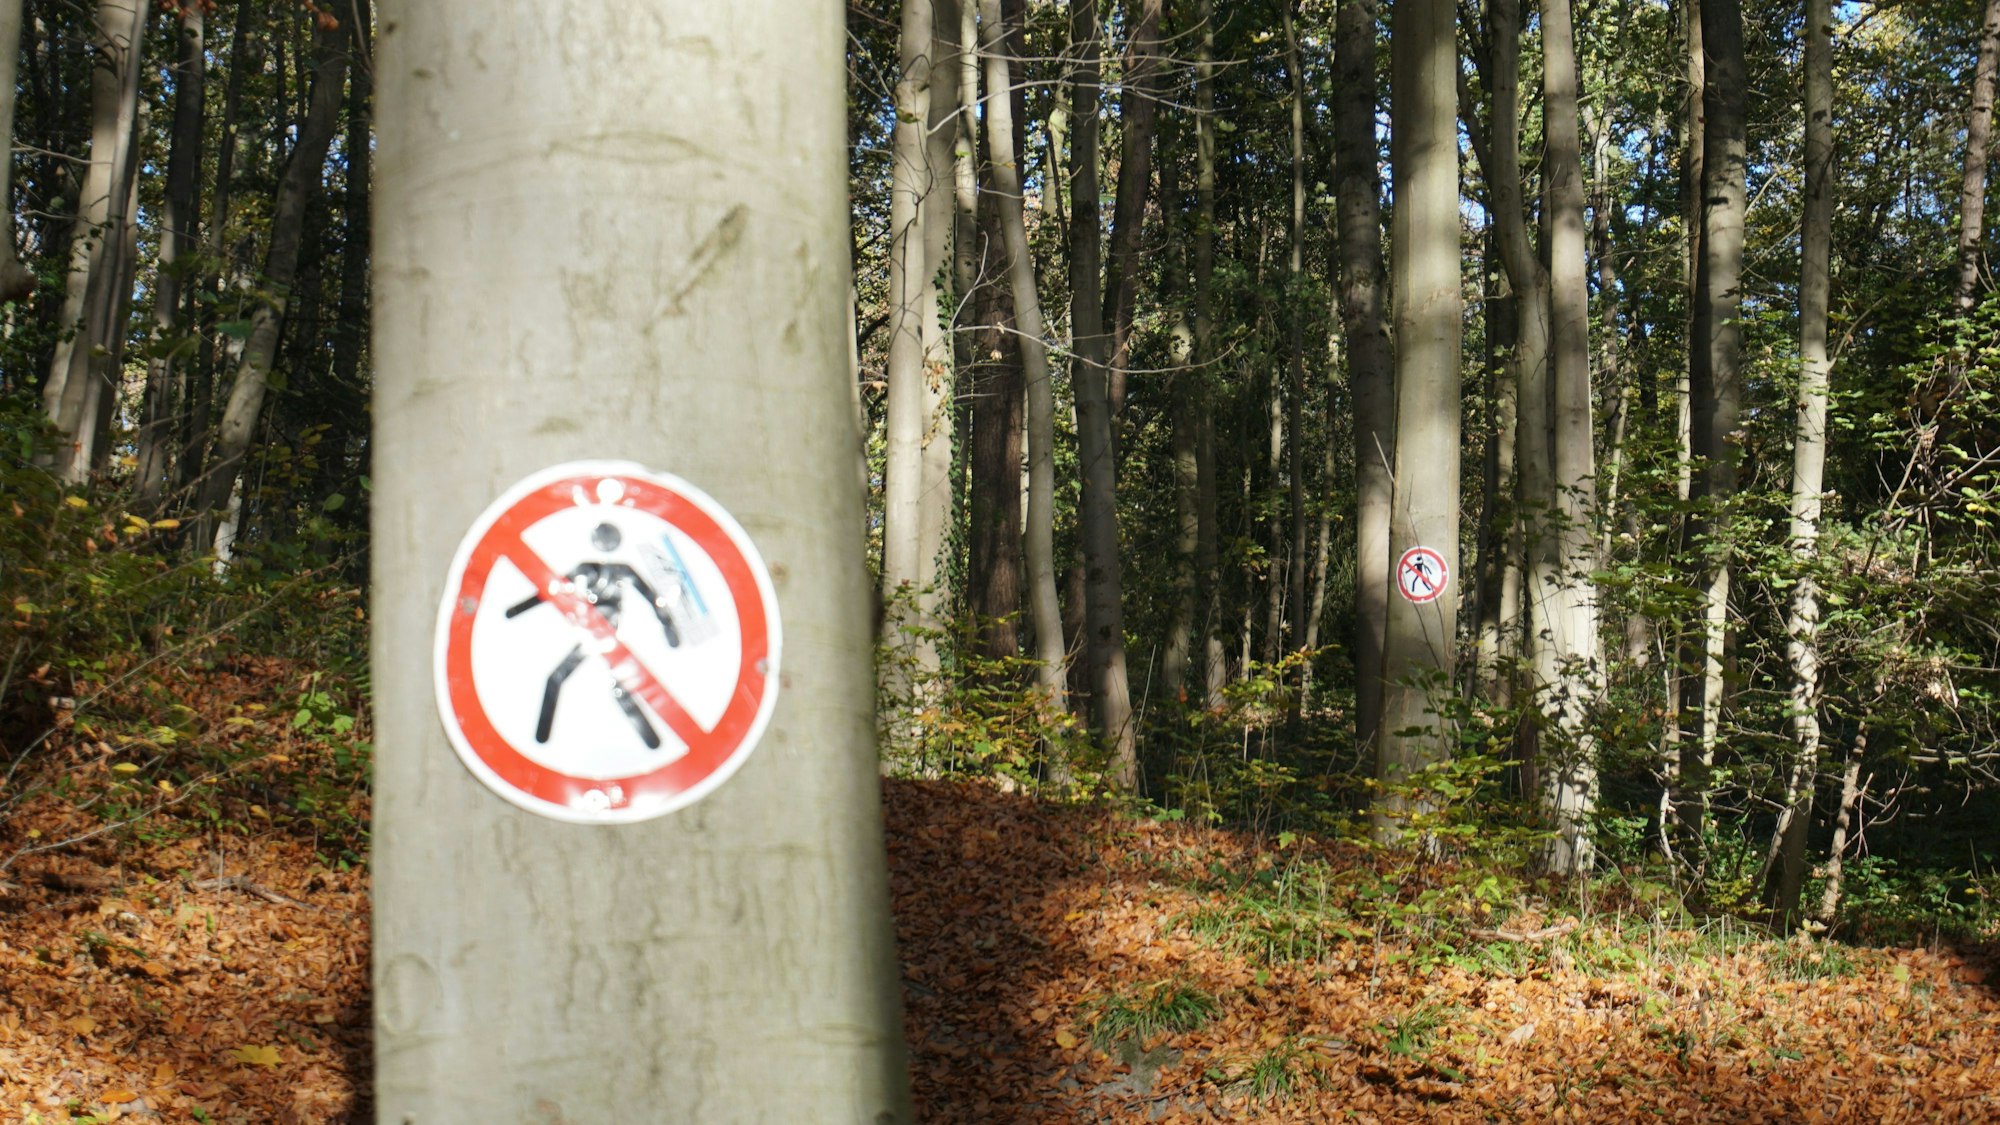 An einem Baum hängt ein Schild: Es zeigt, dass Fußgänger diesen Weg nicht benutzen dürfen. Mountainbiker haben das Schild verbotenerweise aufgehängt.